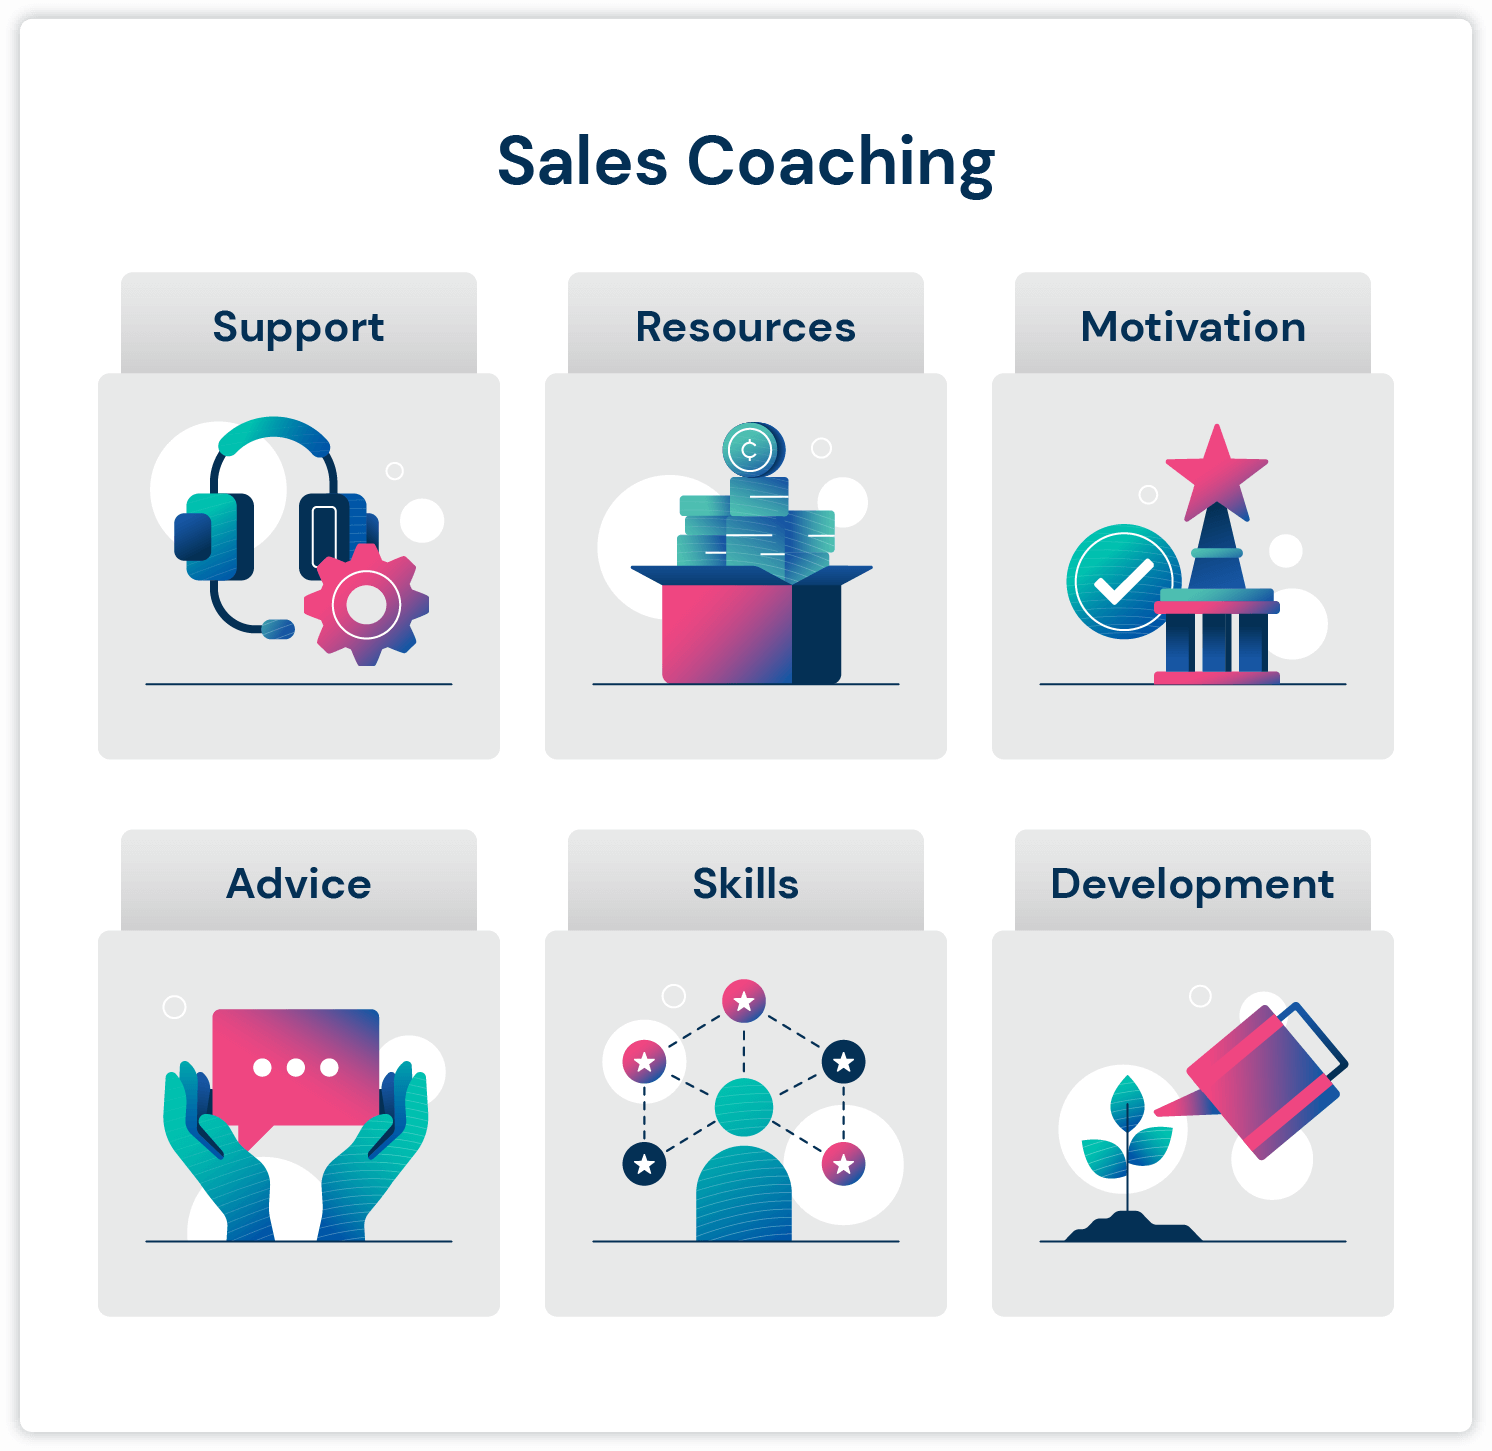 Infografika dotycząca coachingu sprzedaży pokazująca, dlaczego potrzebujesz coachingu sprzedaży: wsparcie, zasoby, motywacja, porady, umiejętności i rozwój.